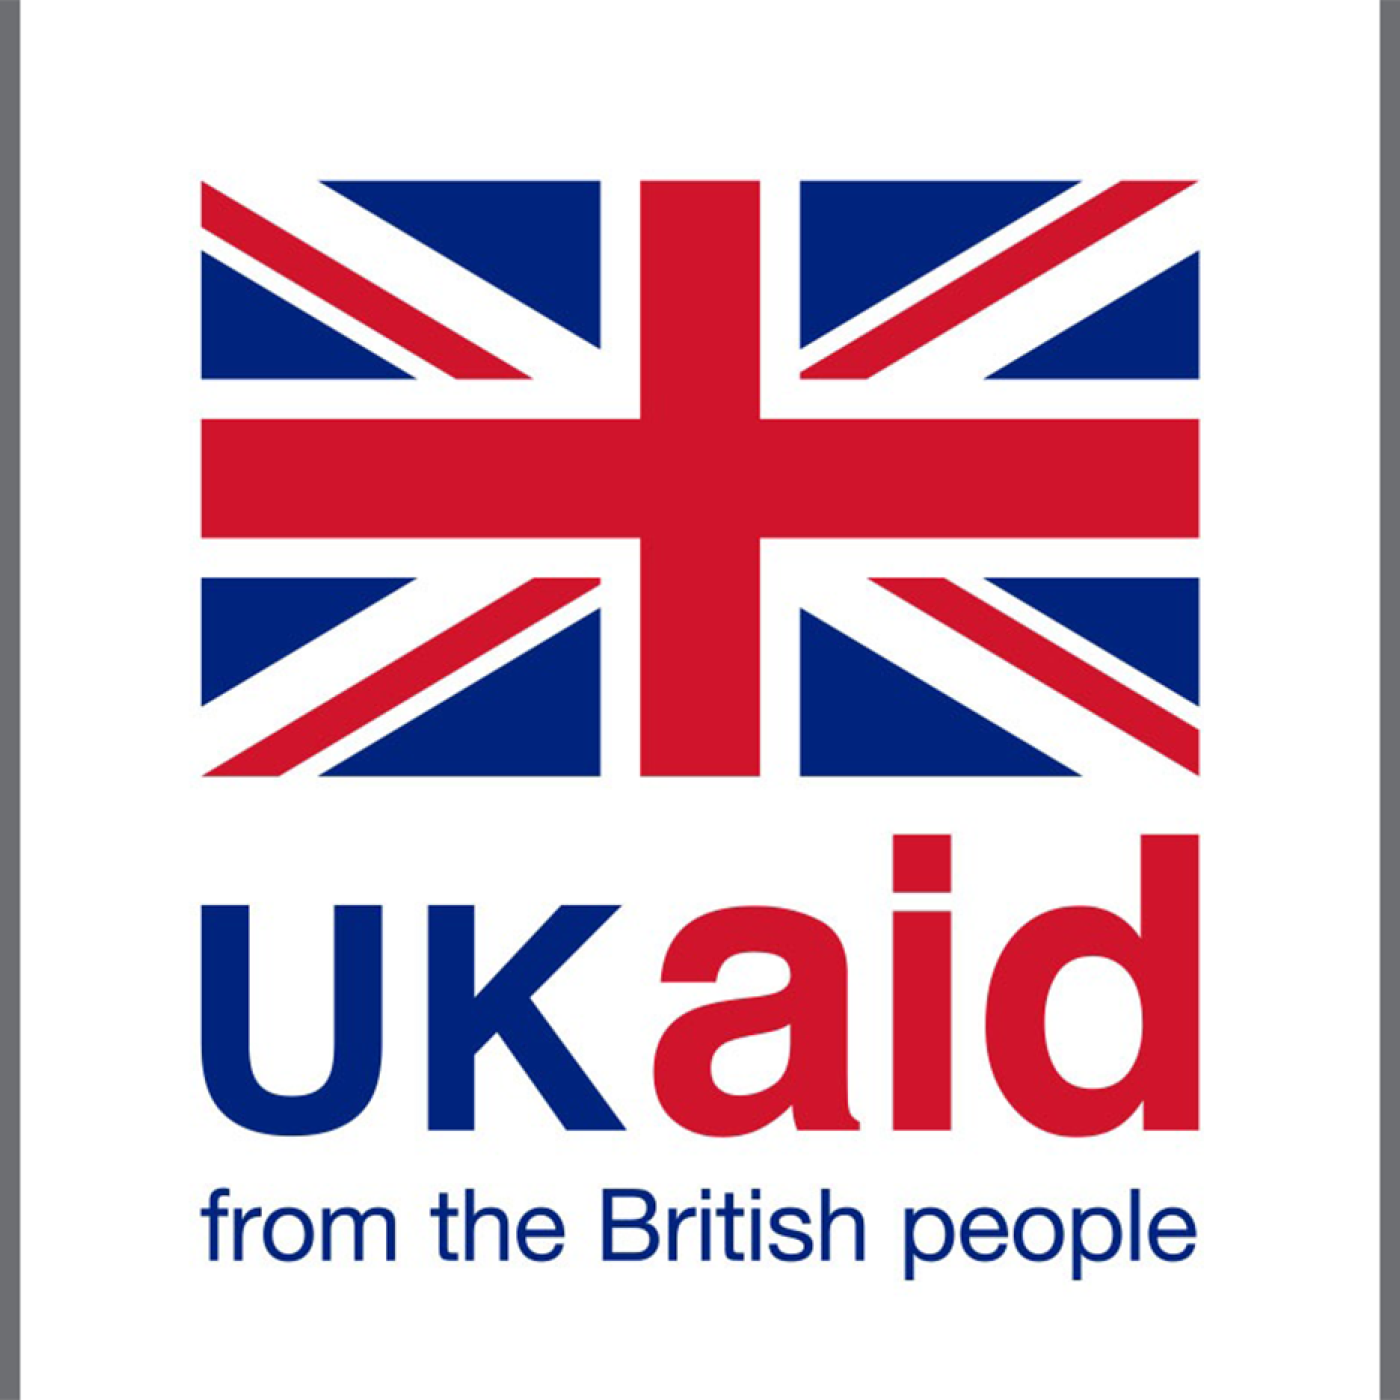 UKAID logo